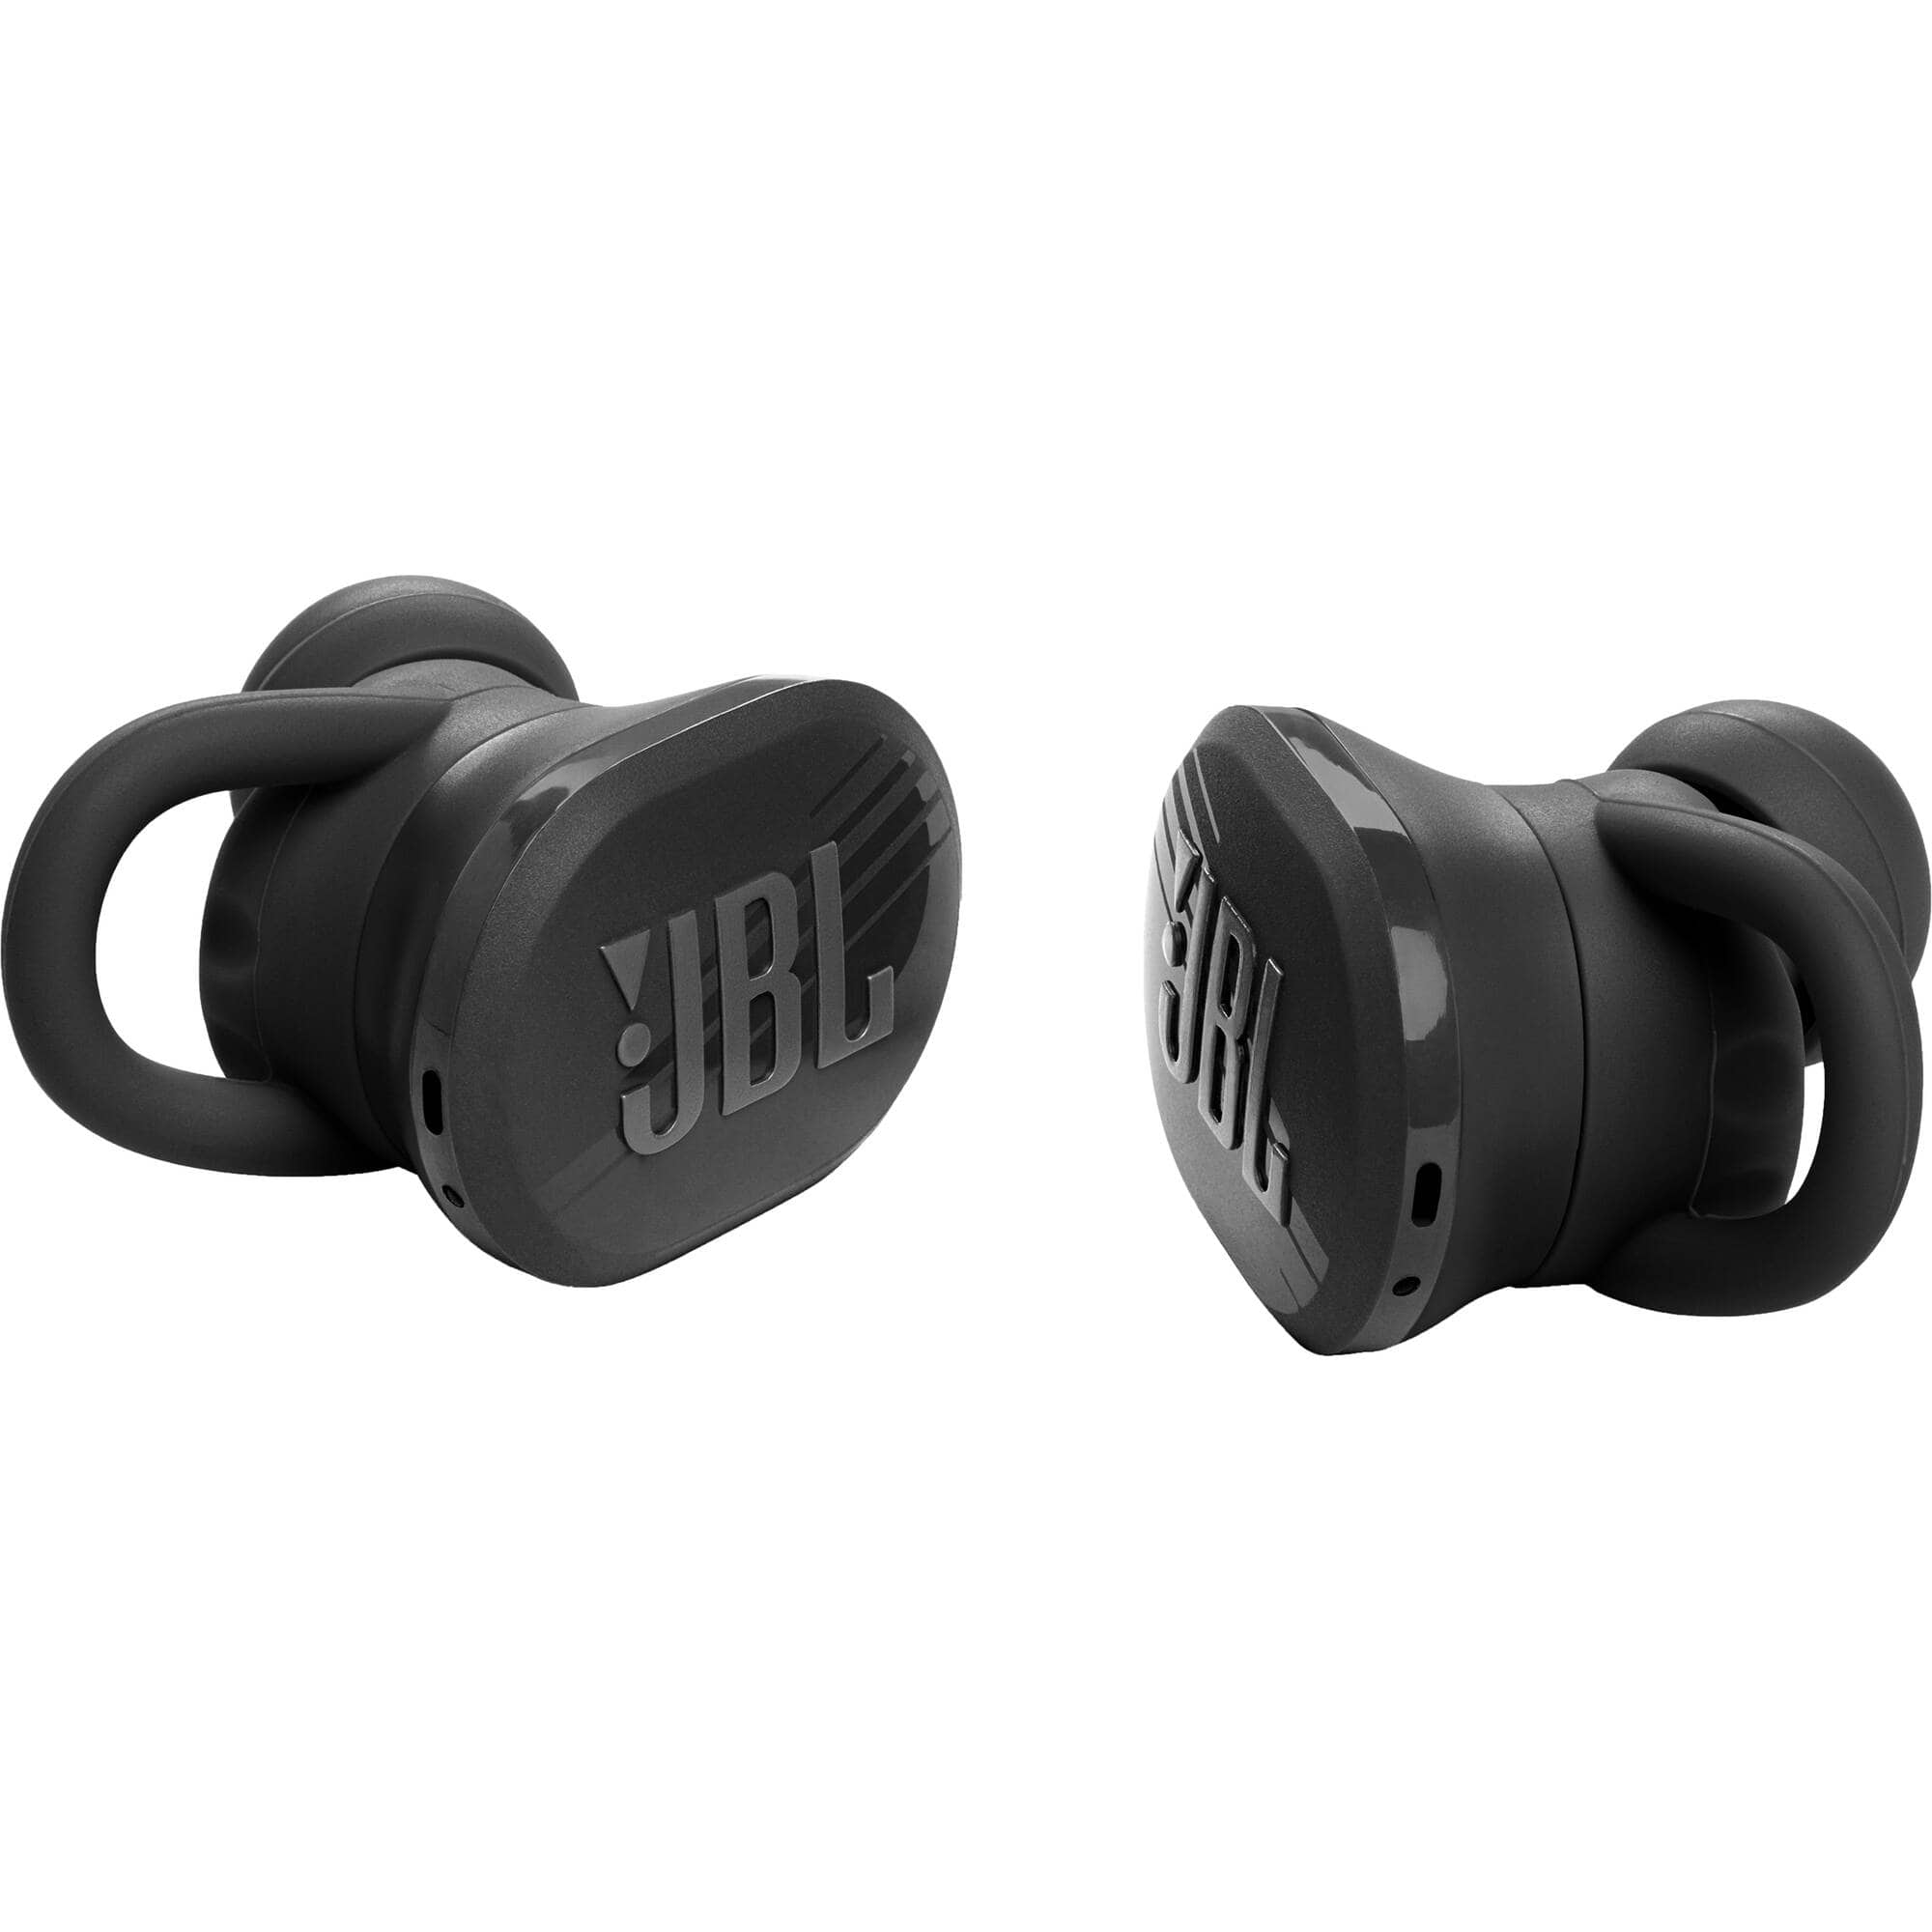 JBL JBLENDURACE Endurance Race Waterproof Wireless Sport Earbuds - Certified Refurbished